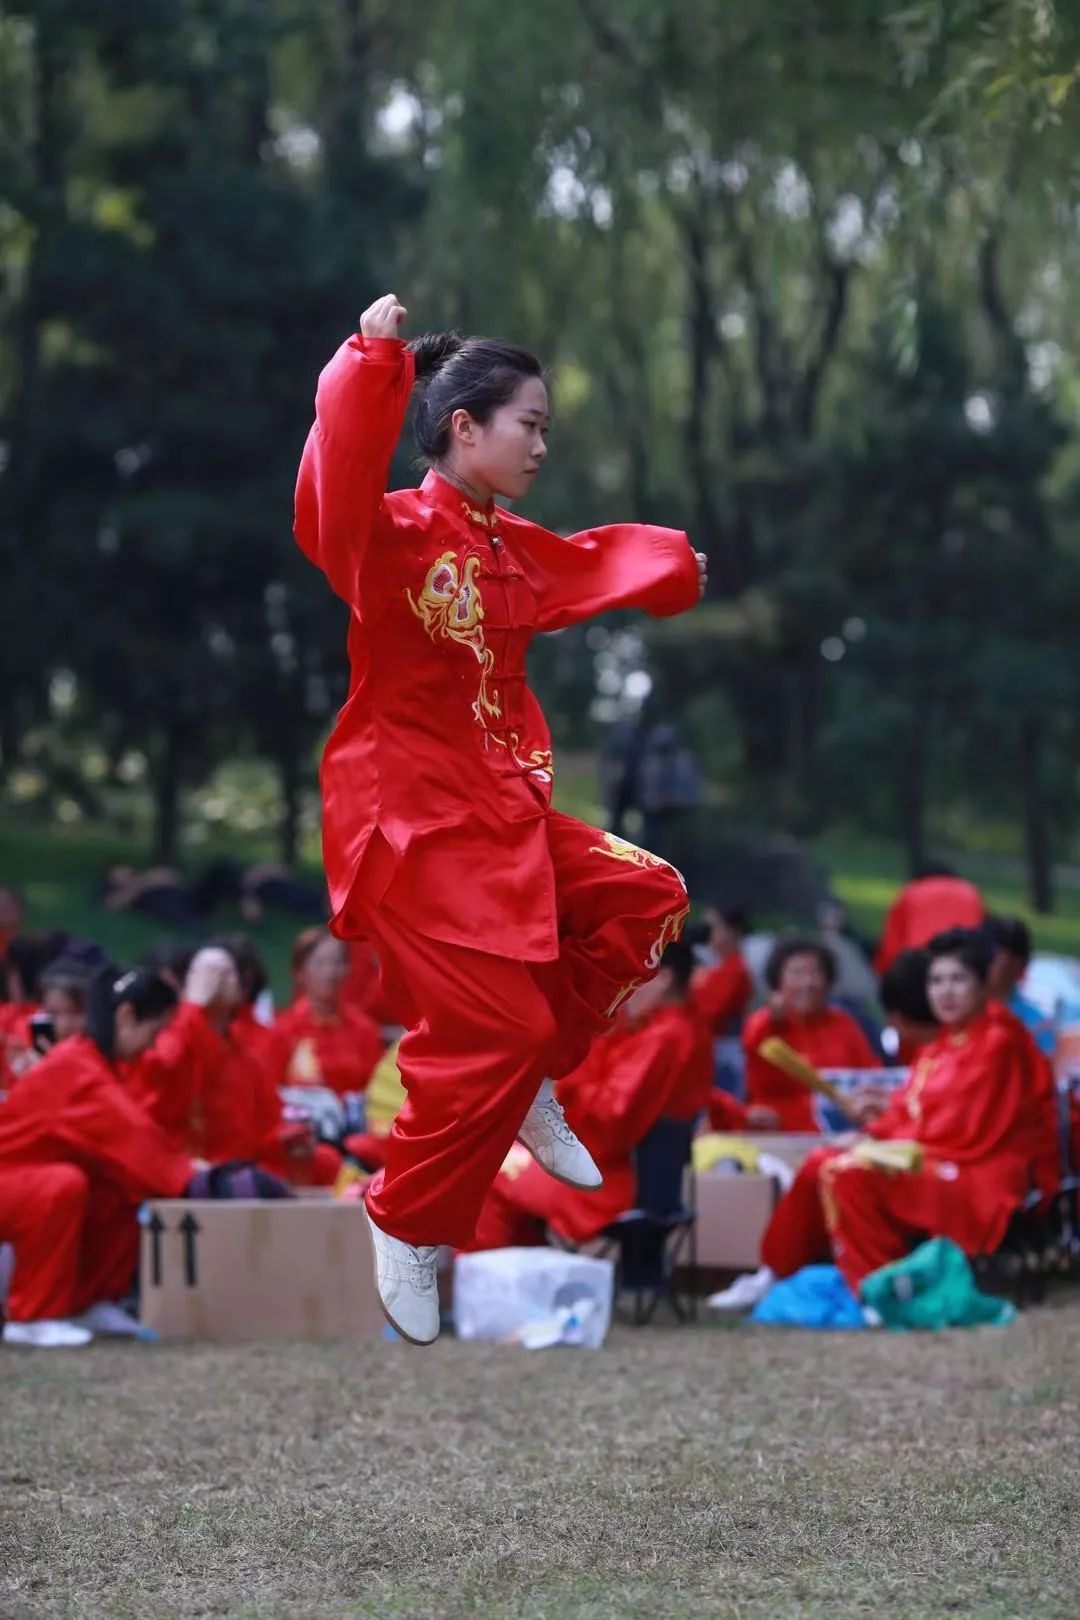 冠军邱慧芳带领海太协会代表队在国庆游园活动中精彩展演24式太极拳